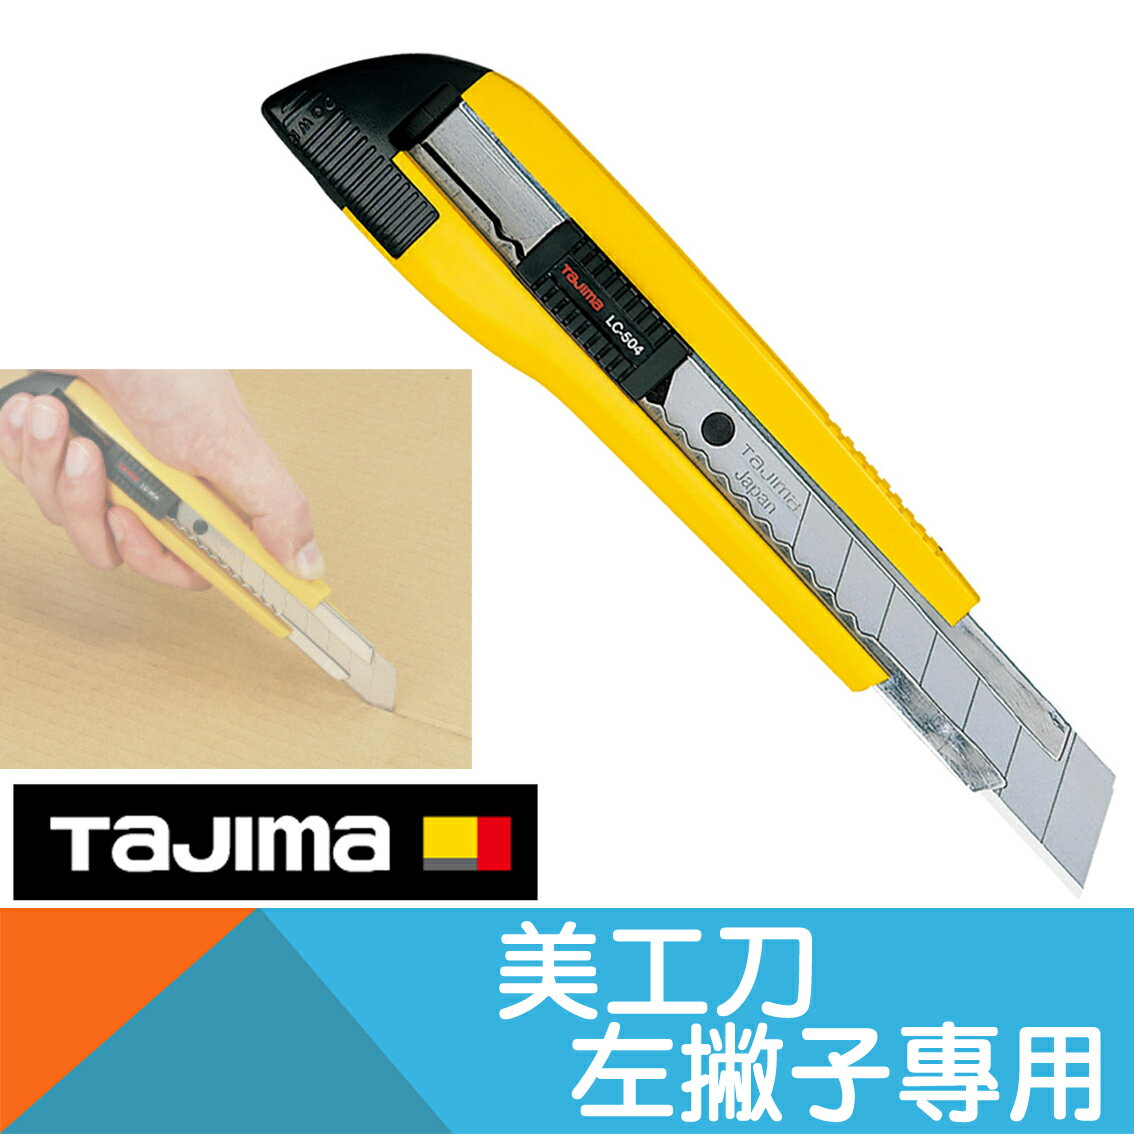 左撇子用美工刀-自動固定式【日本Tajima】